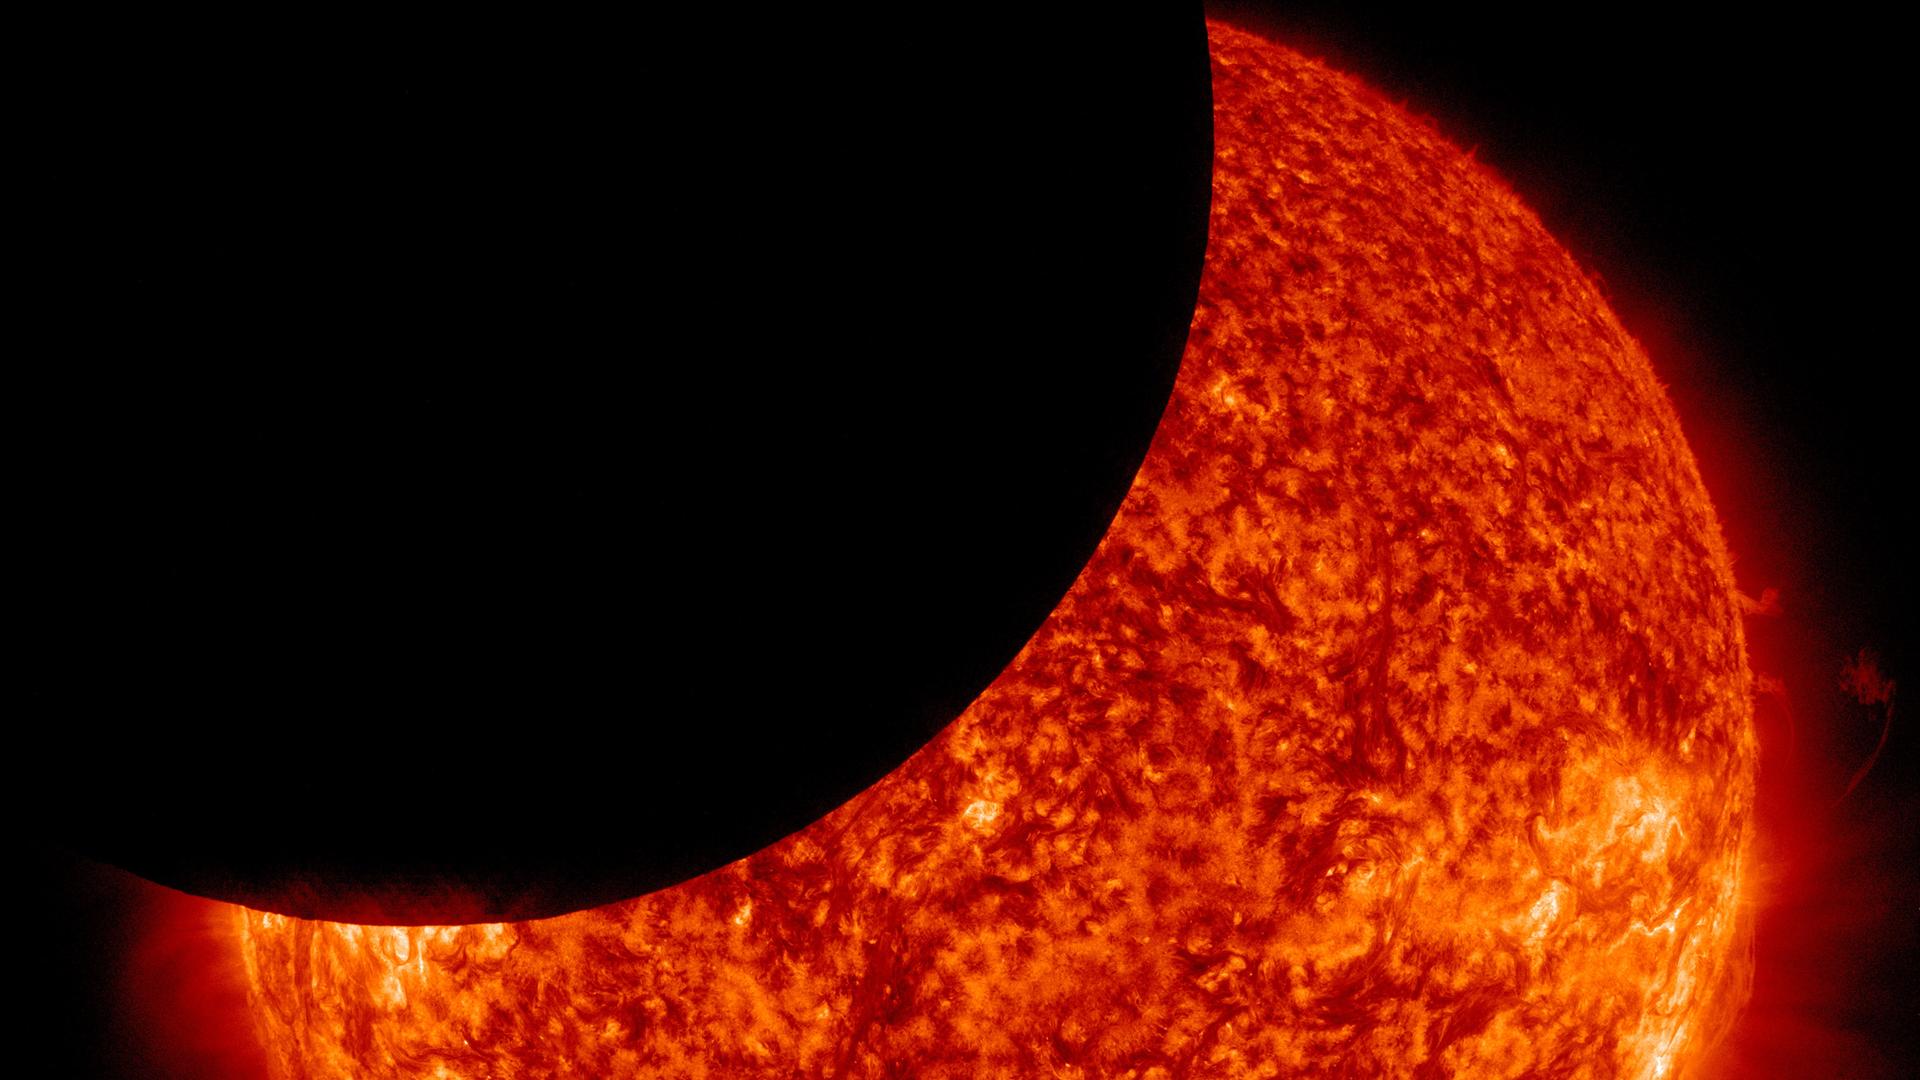 Am 25. Oktober 2022 kommt es in Mitteleuropa zu einer partiellen Sonnenfinsternis. 